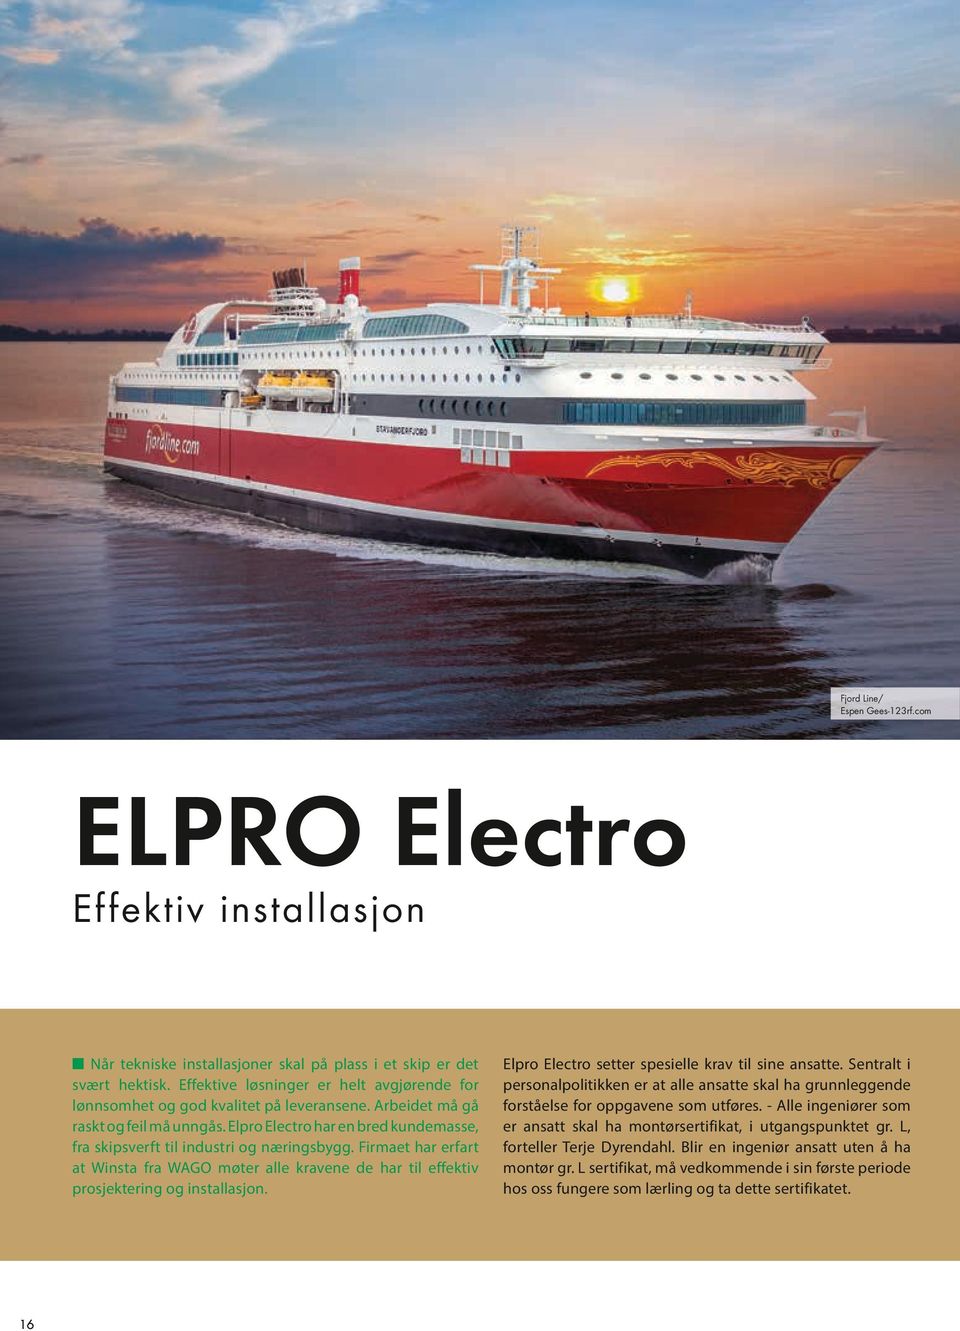 Elpro Electro har en bred kundemasse, fra skipsverft til industri og næringsbygg. Firmaet har erfart at Winsta fra WAGO møter alle kravene de har til effektiv prosjektering og installasjon.